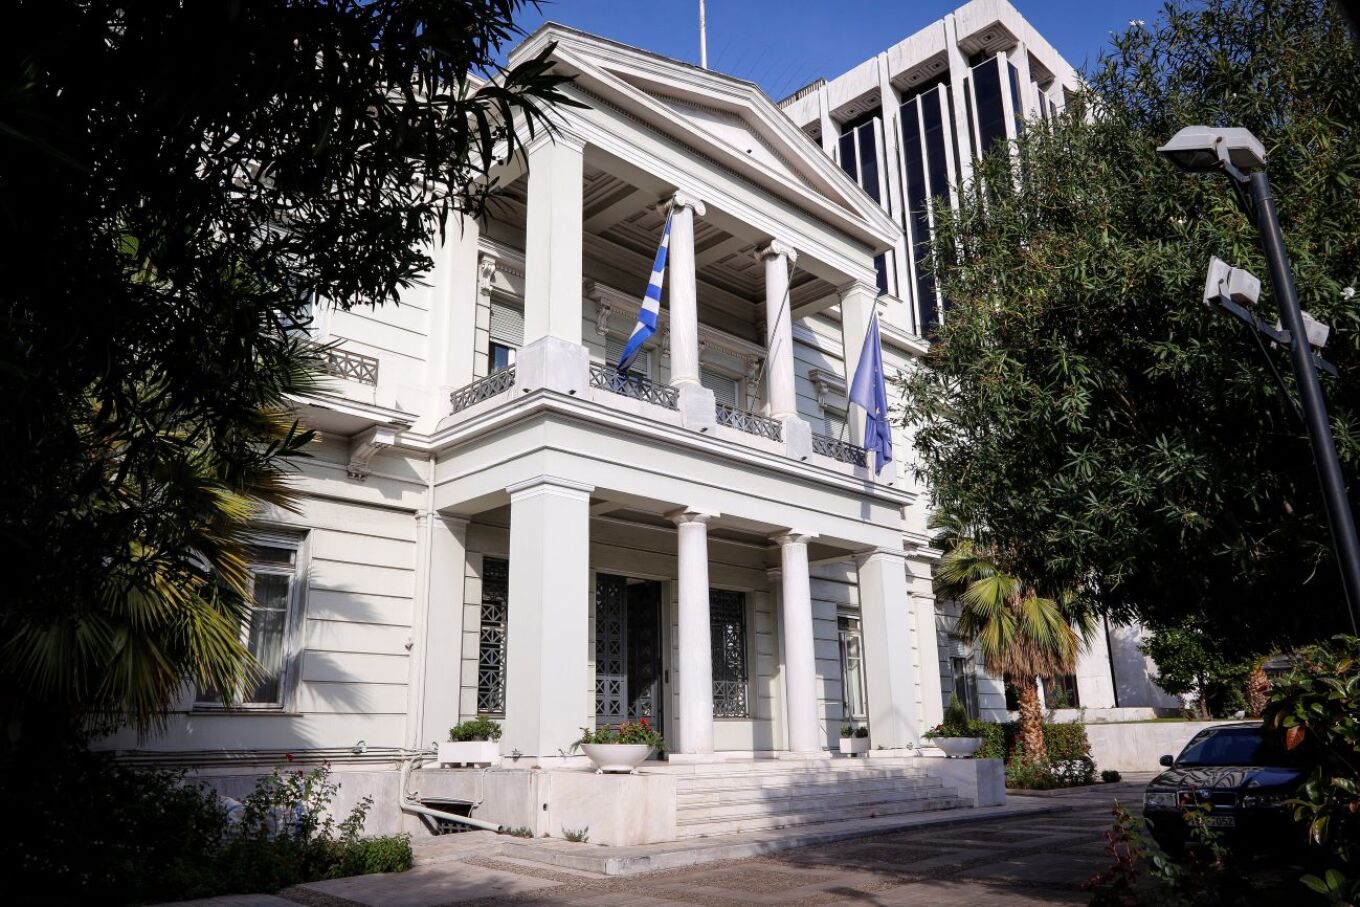 ΥΠΕΞ: «Καταδικάζουμε τη διοργάνωση πάρτυ εντός του ιστορικού ελληνορθόδοξου Ναού του Αγίου Βουκόλου στη Σμύρνη»